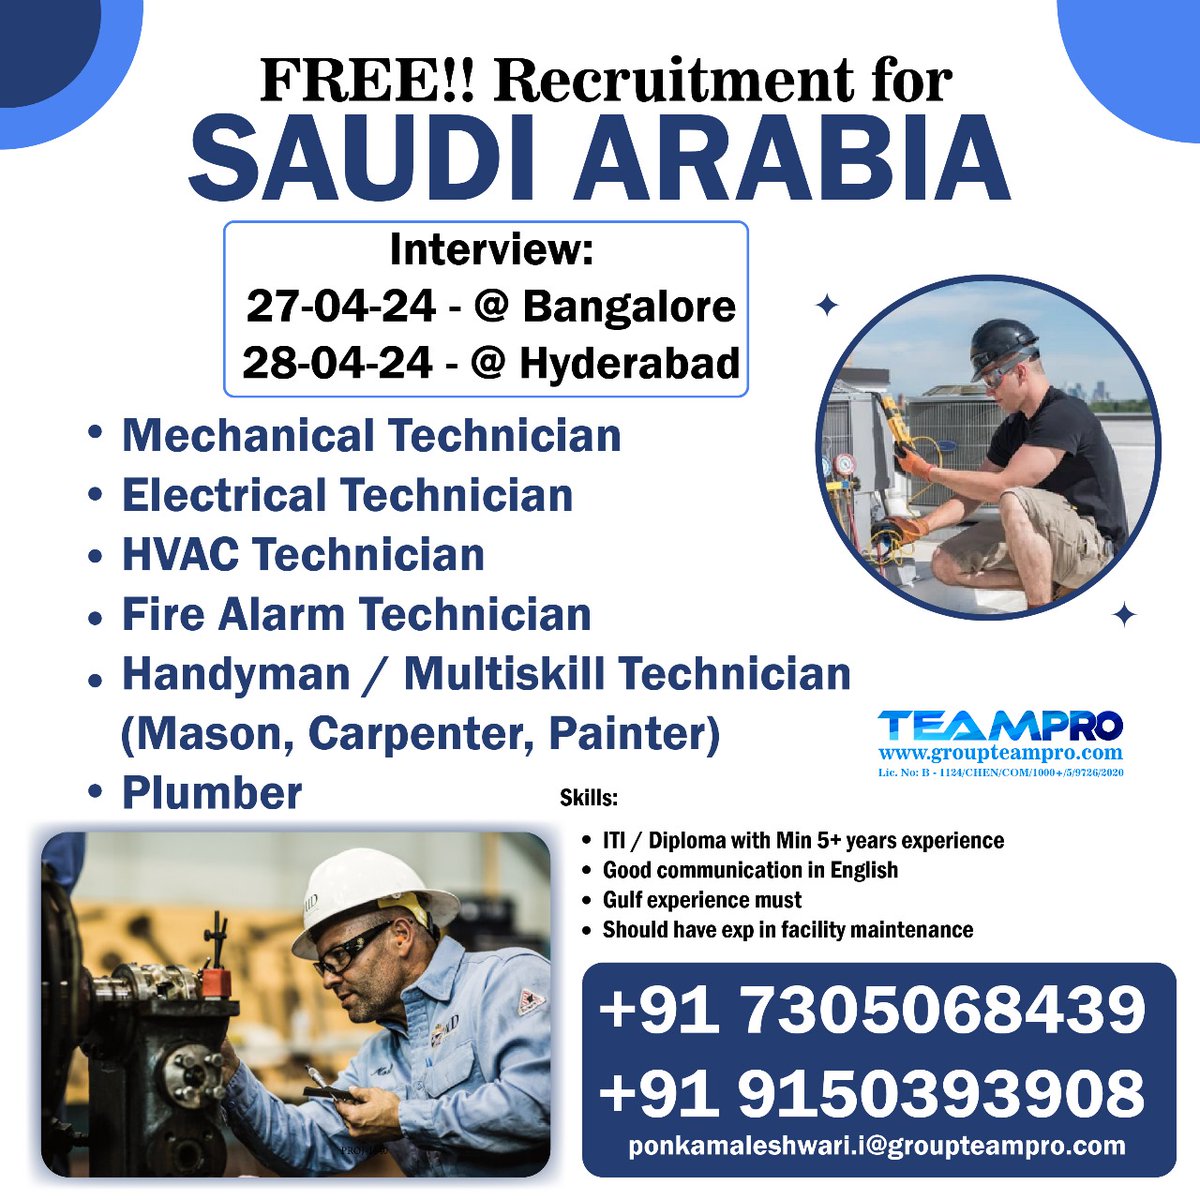 #freerecruitment #saudijobs #saudijobseekers #technicians #electrical #mechanical #firealarm #hvac #immediatejoiners #directinterview #shortlistingunderprogress